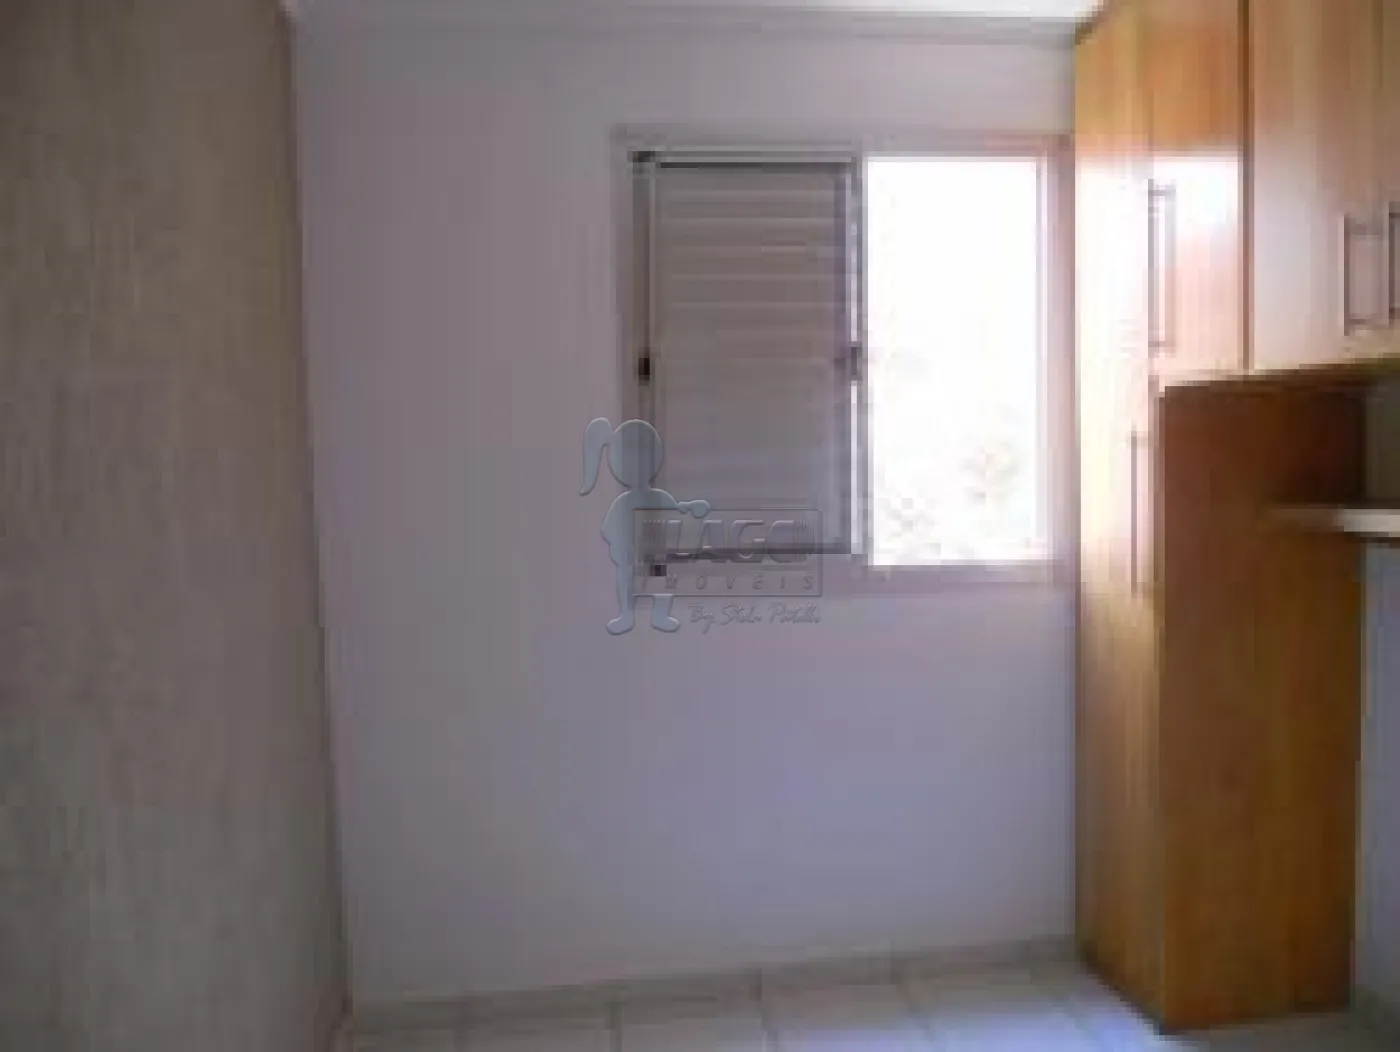 Comprar Apartamentos / Padrão em São Paulo R$ 300.000,00 - Foto 9